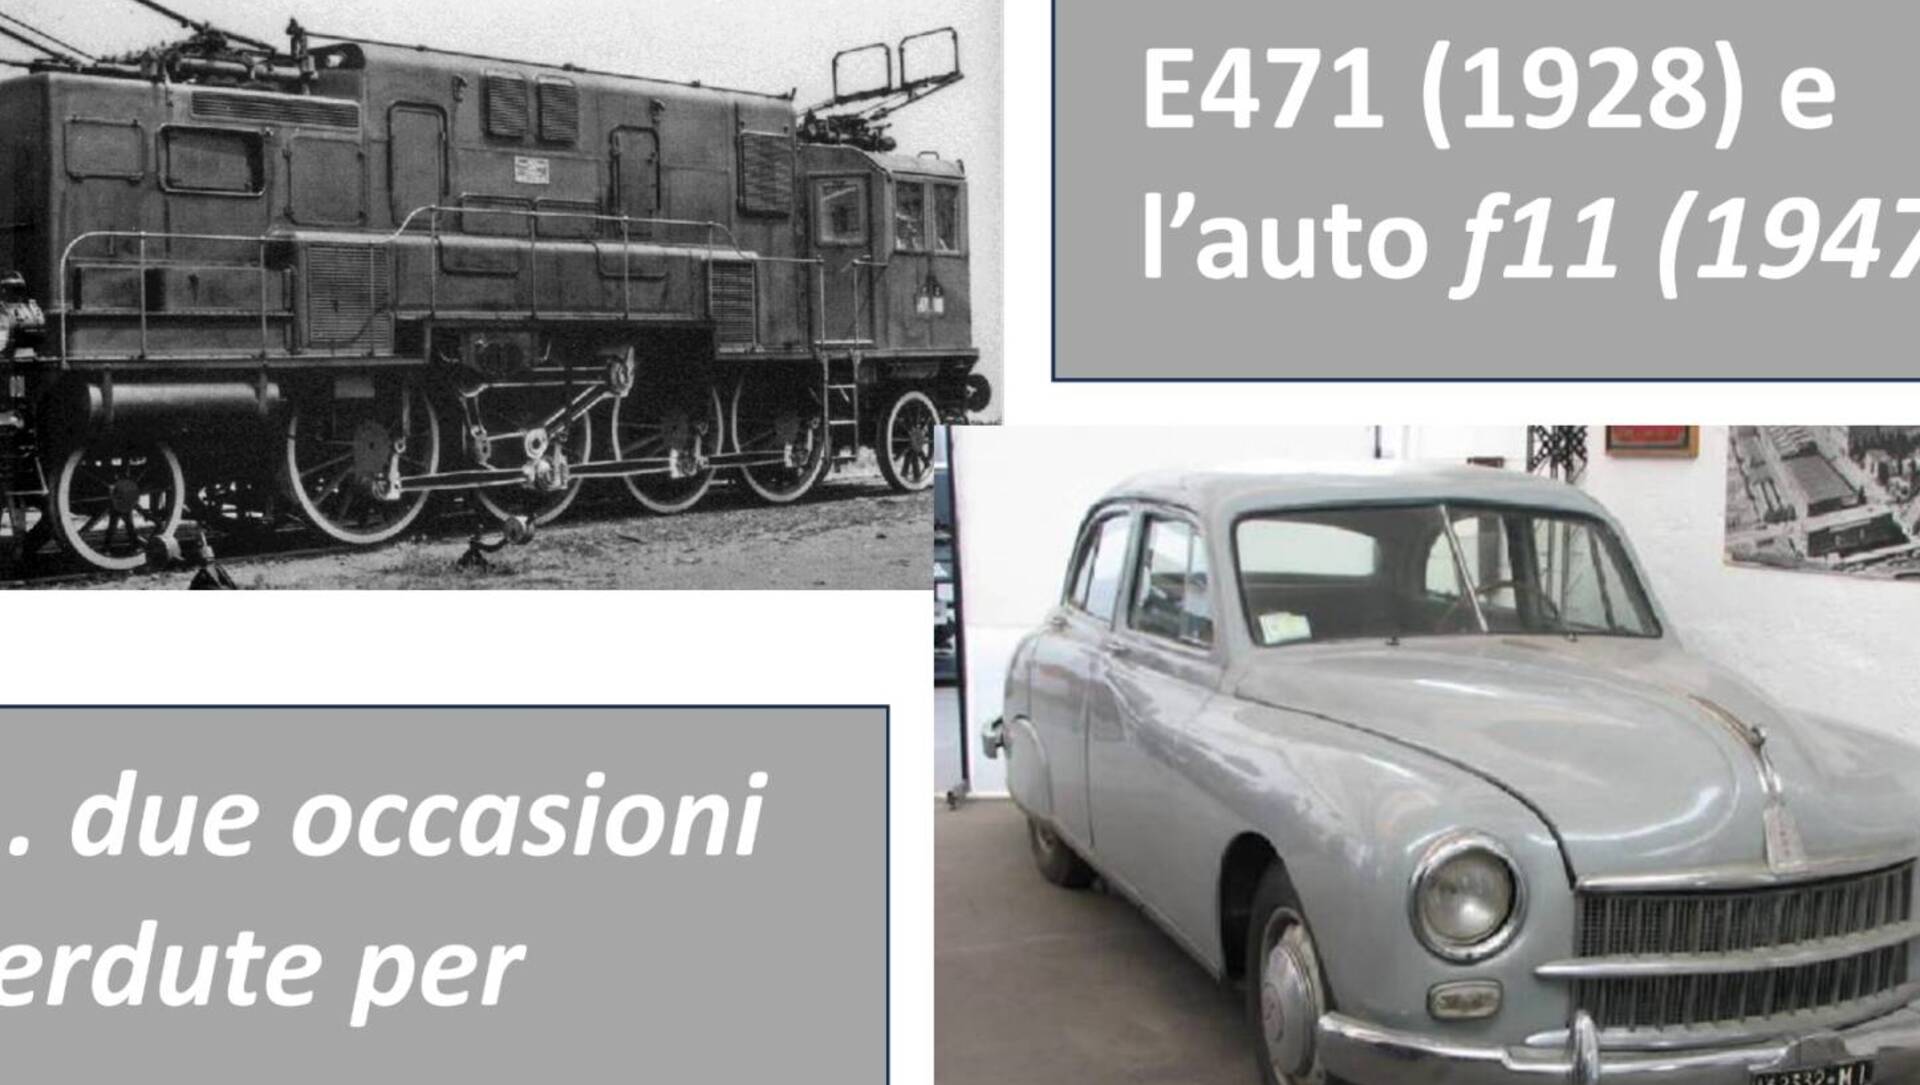 16 dic – La Cemsa: dall’elettrificazione della ferrovia al sogno dell’auto f11